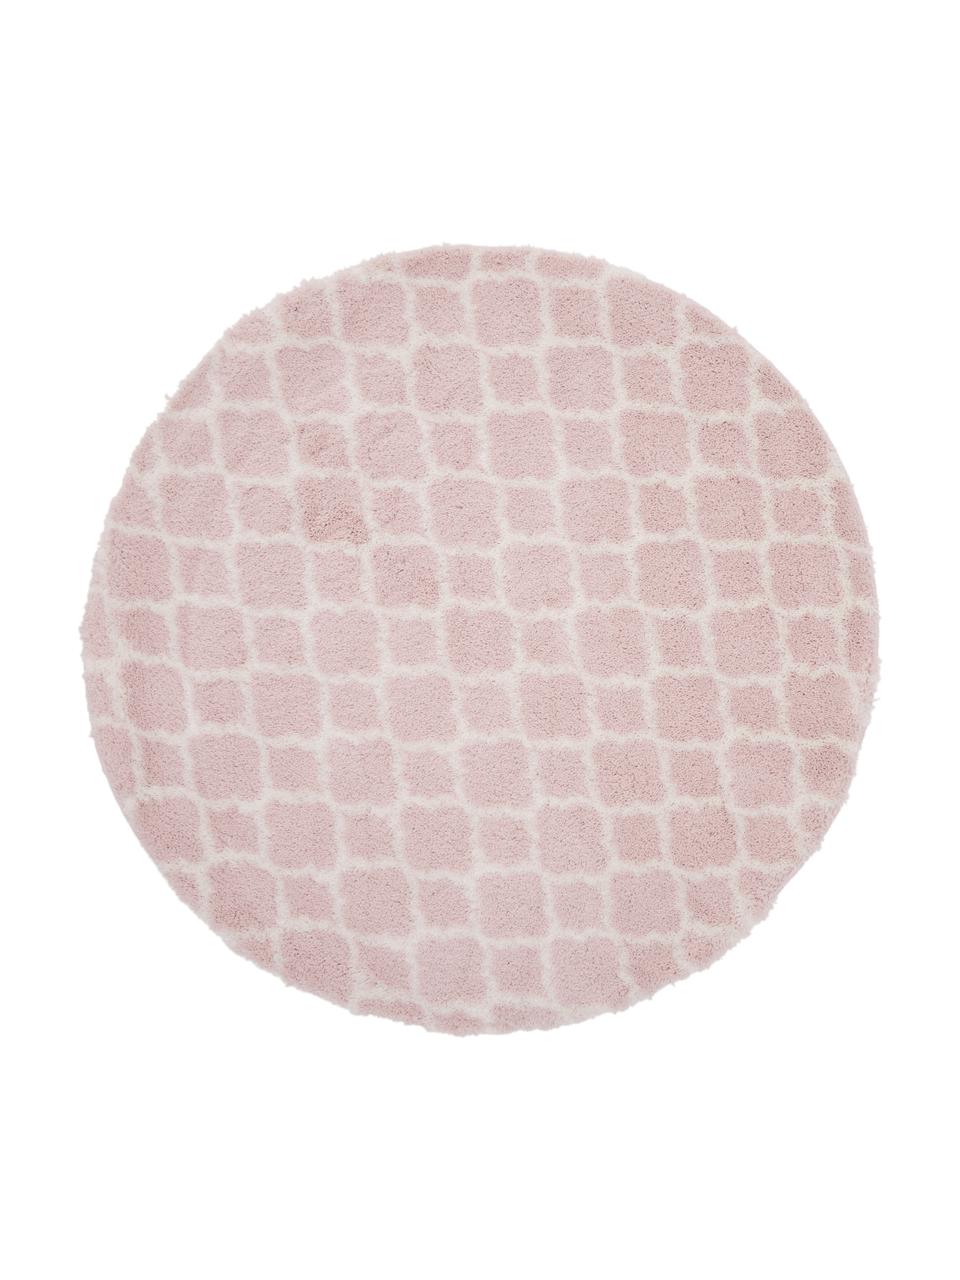 Okrągły dywan z wysokim stosem Mona, Brudny różowy, kremowobiały, Ø 150 cm (Rozmiar M)